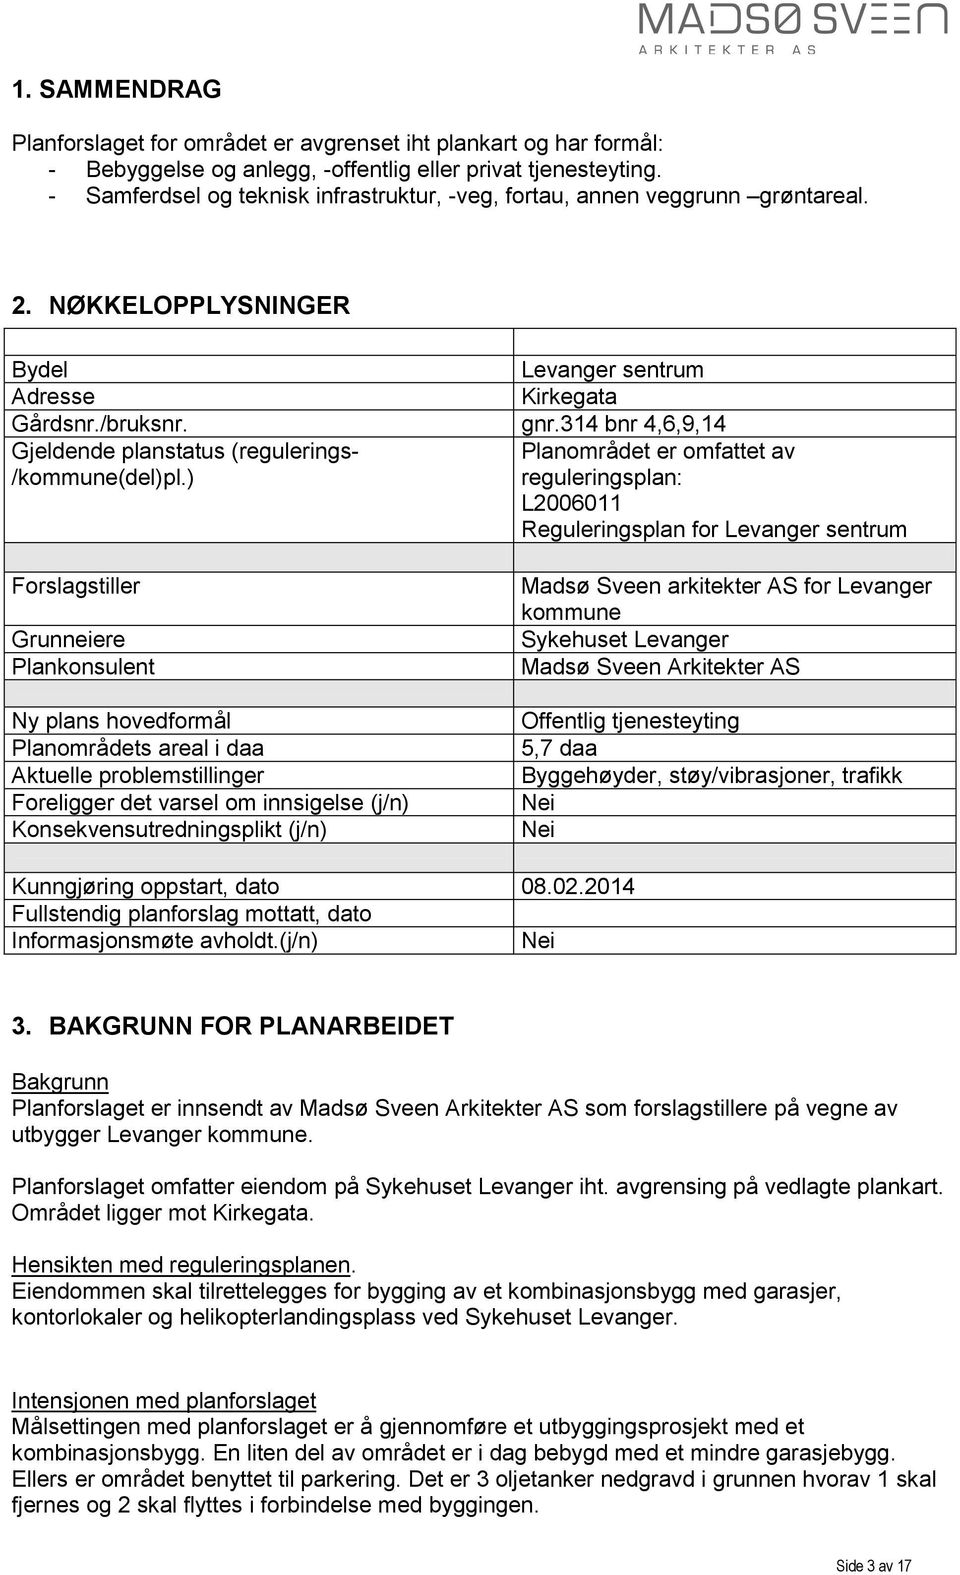 314 bnr 4,6,9,14 Gjeldende planstatus (regulerings- Planområdet er omfattet av /kommune(del)pl.